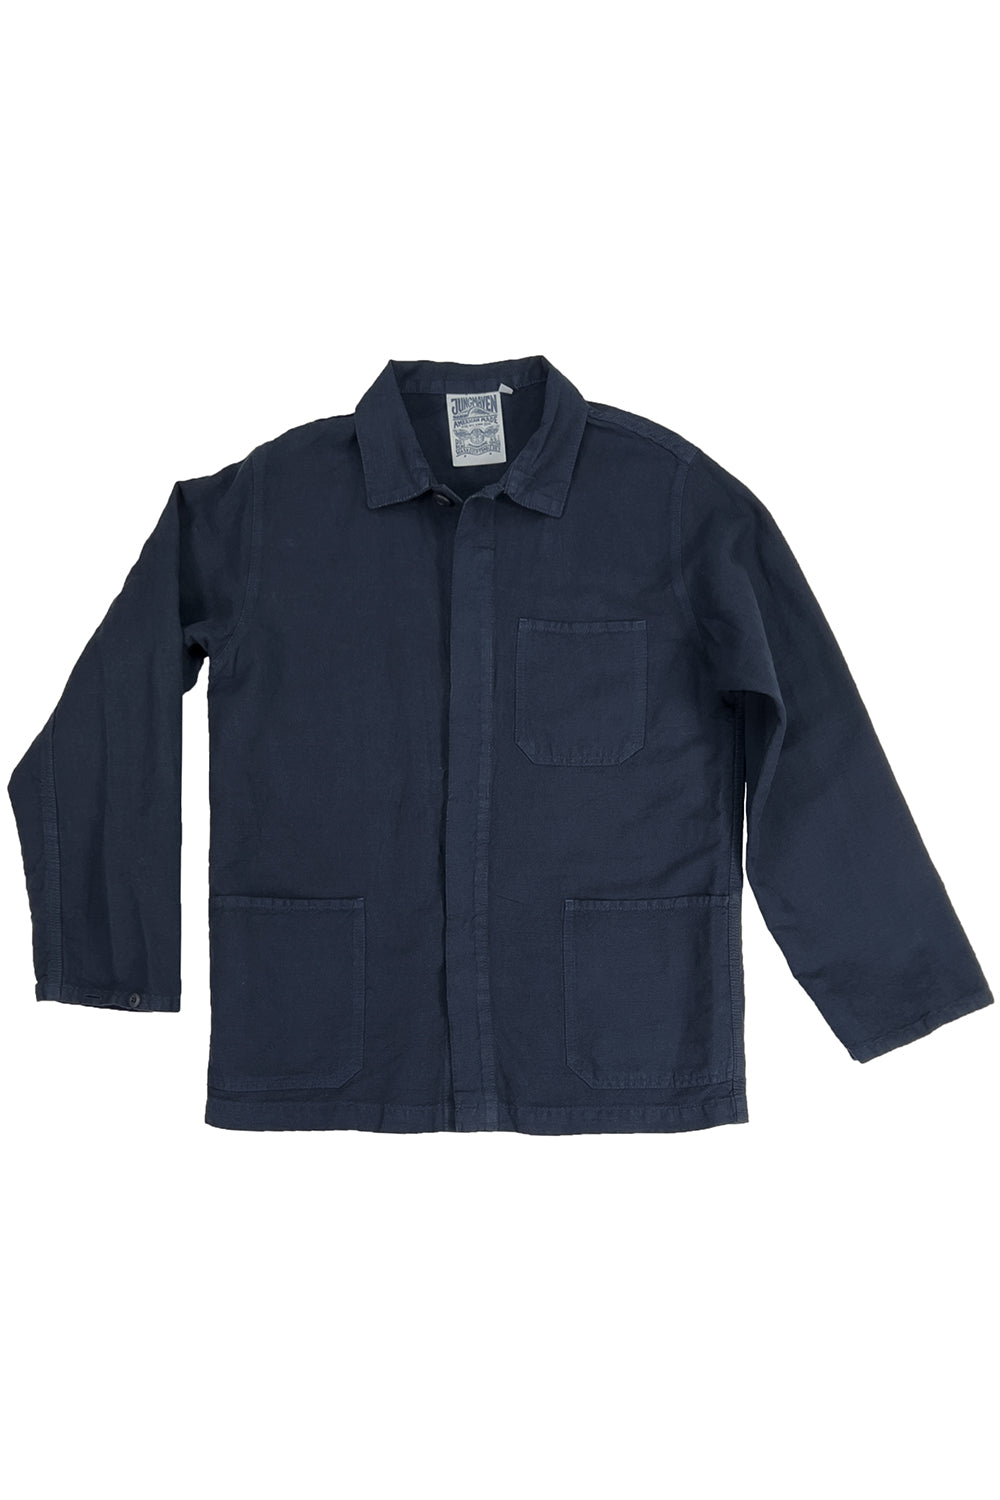 Cascade Jacket | Jungmaven Hemp Clothing & Accessories - USA Made